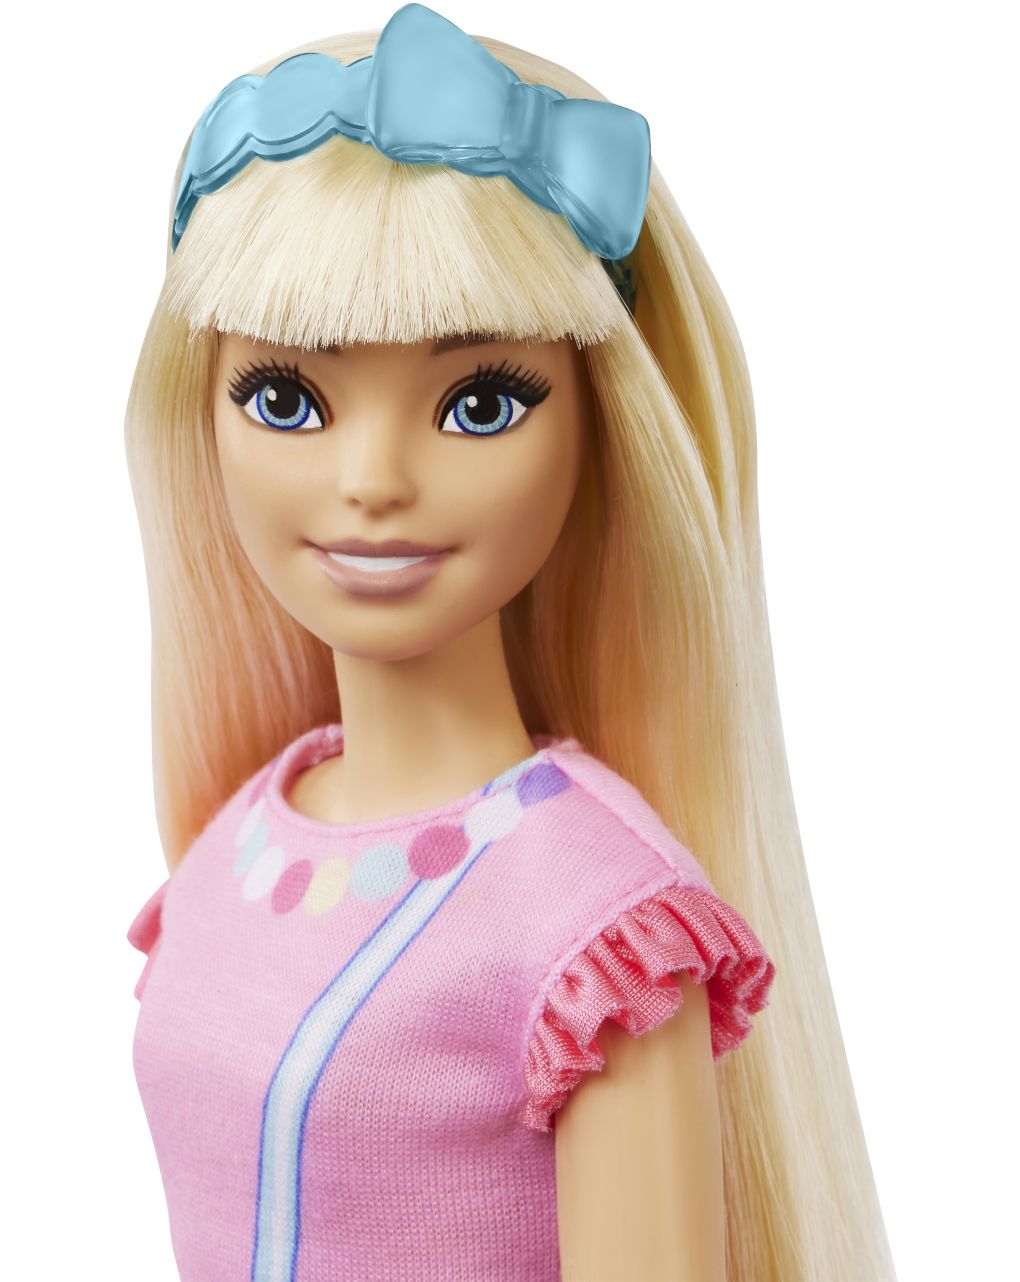 My first barbie - barbie - Barbie